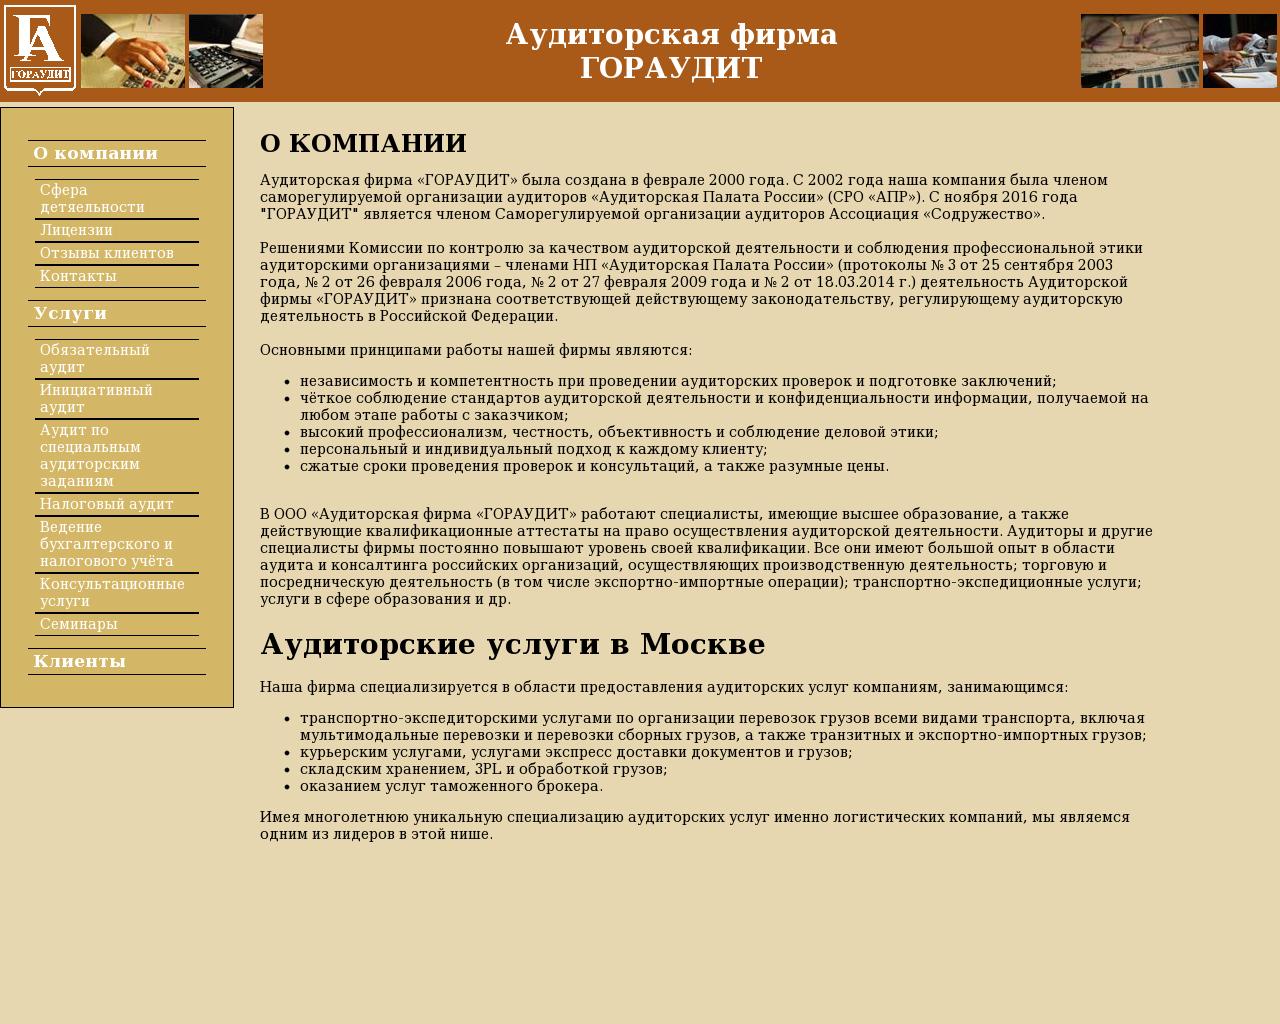 Изображение сайта goraudit.ru в разрешении 1280x1024